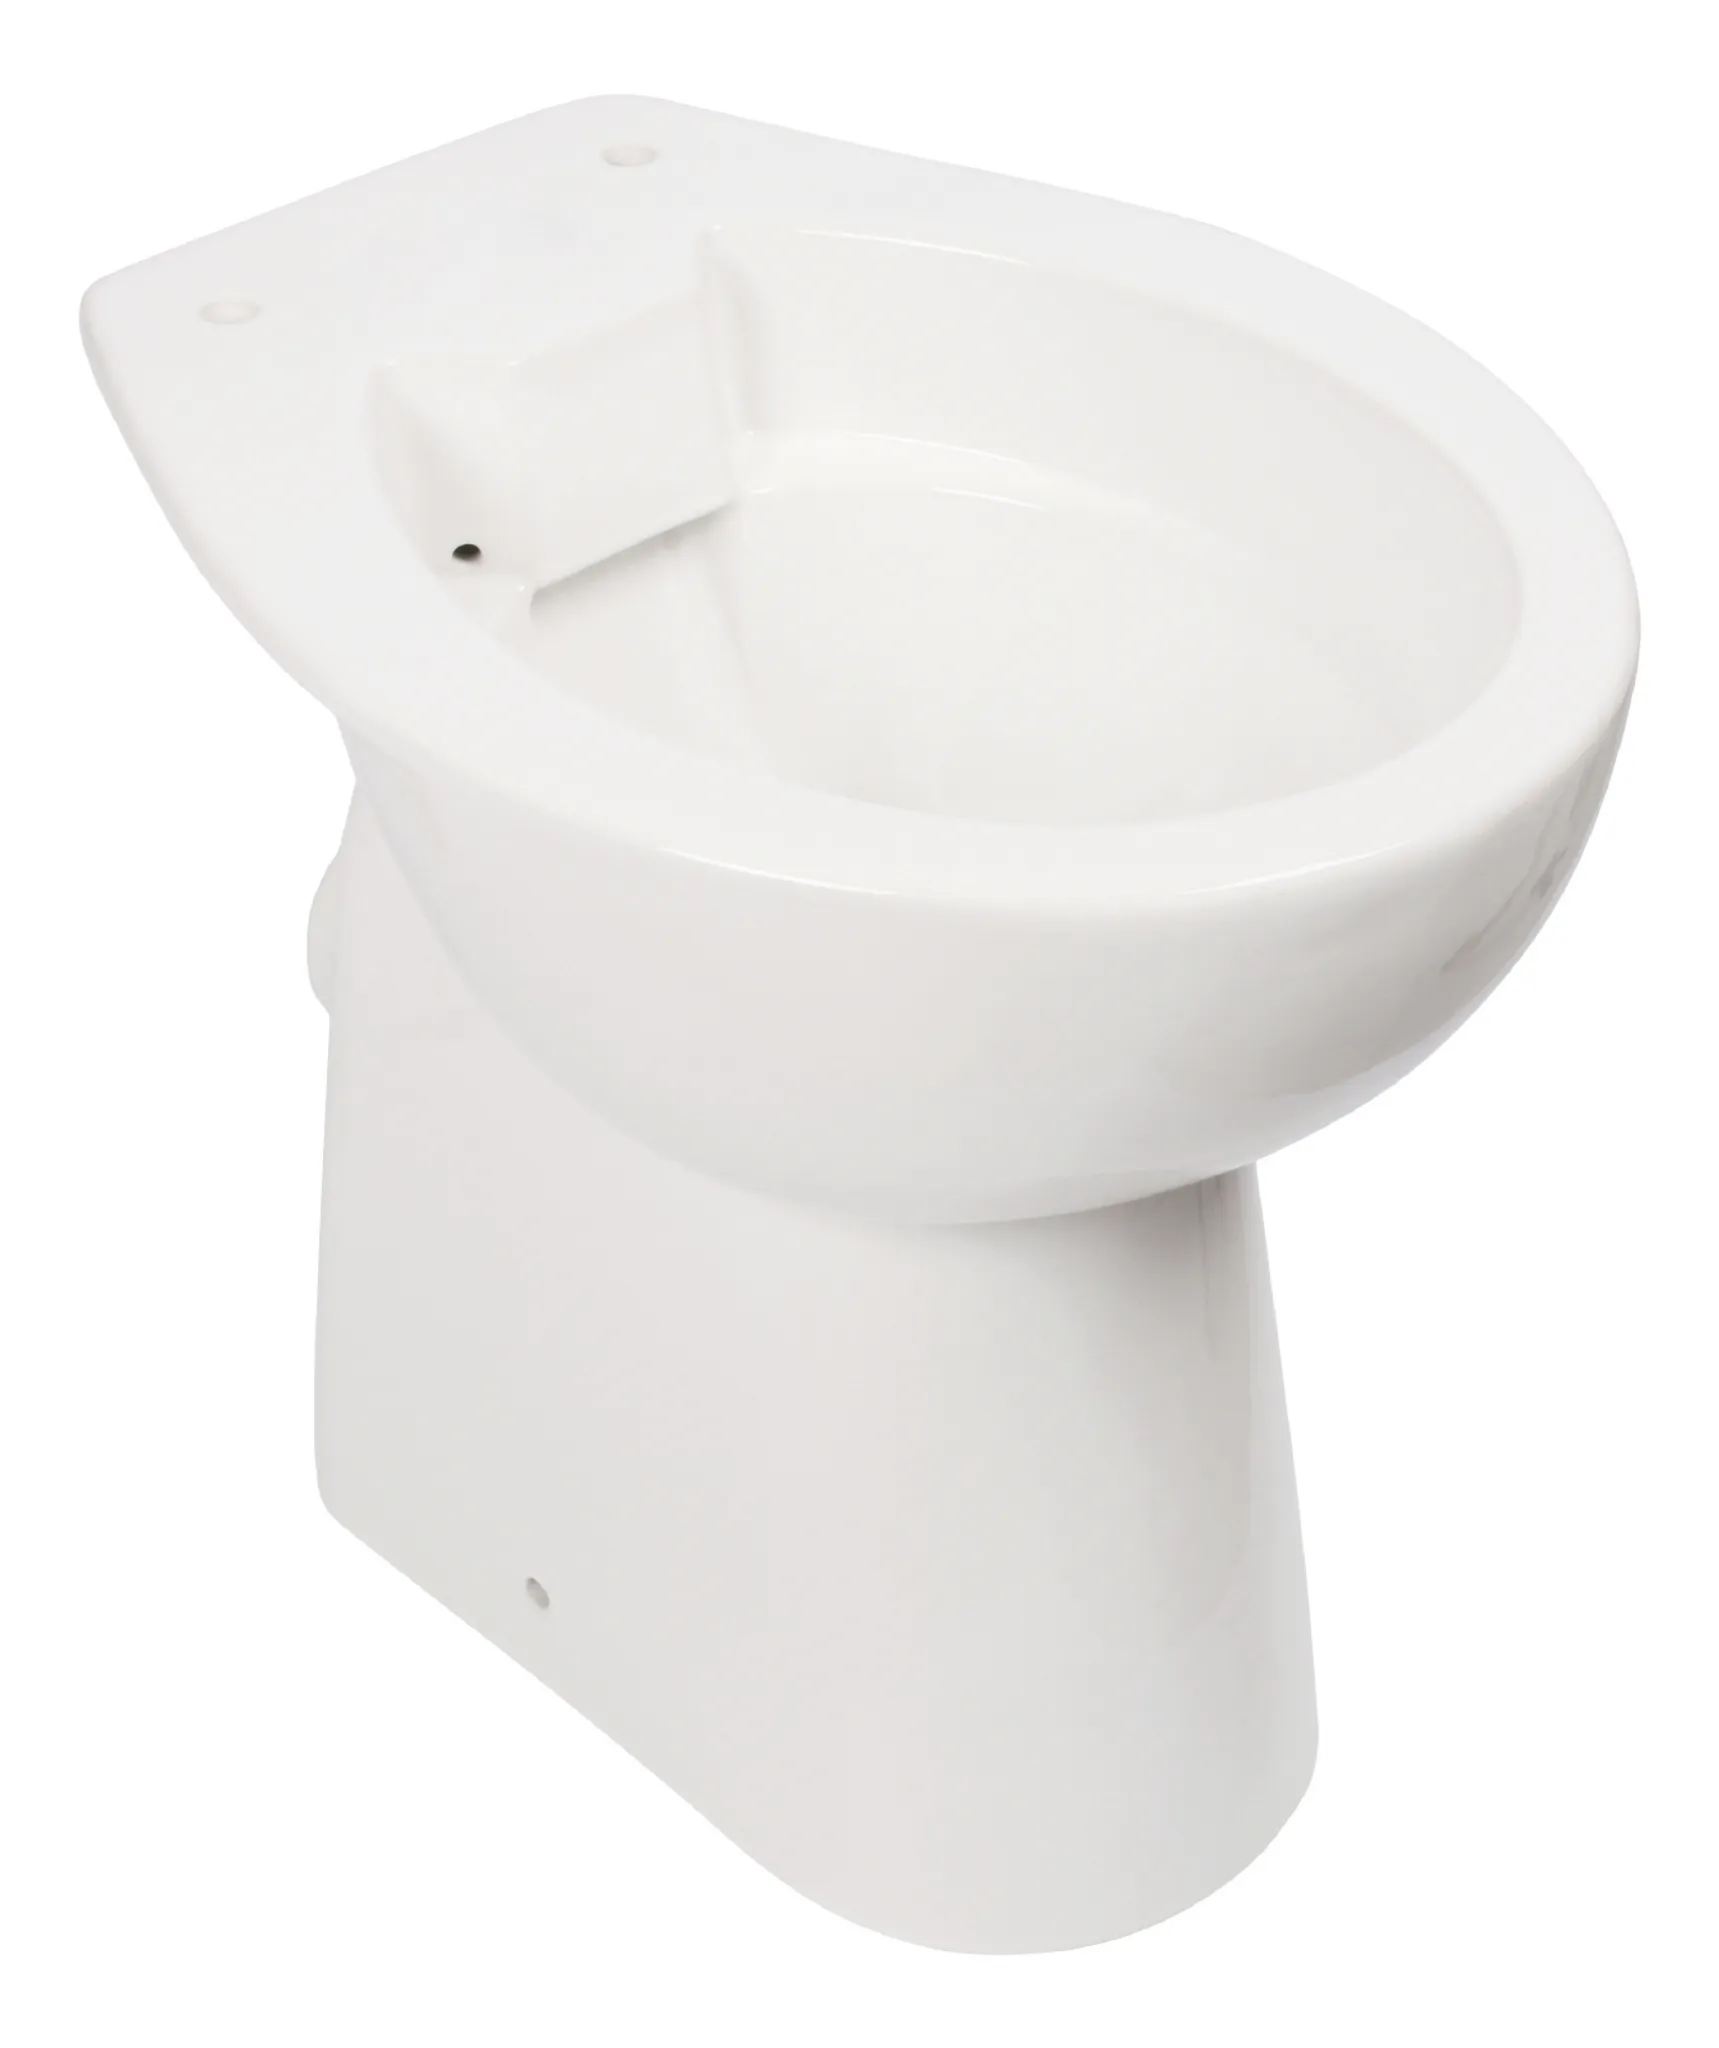 aquaSu® Spülrandloses Stand-WC Igeno | +7 cm